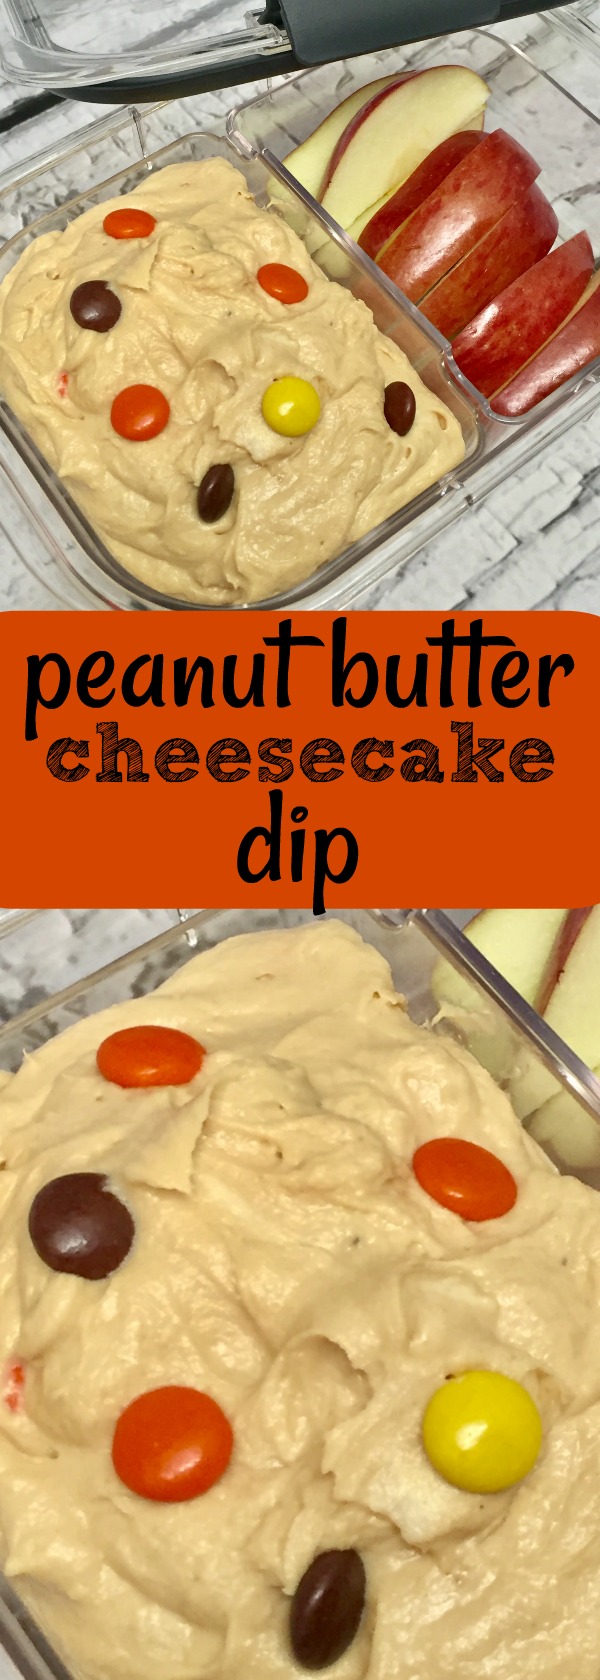 peanut butter cheesecake dip recipe